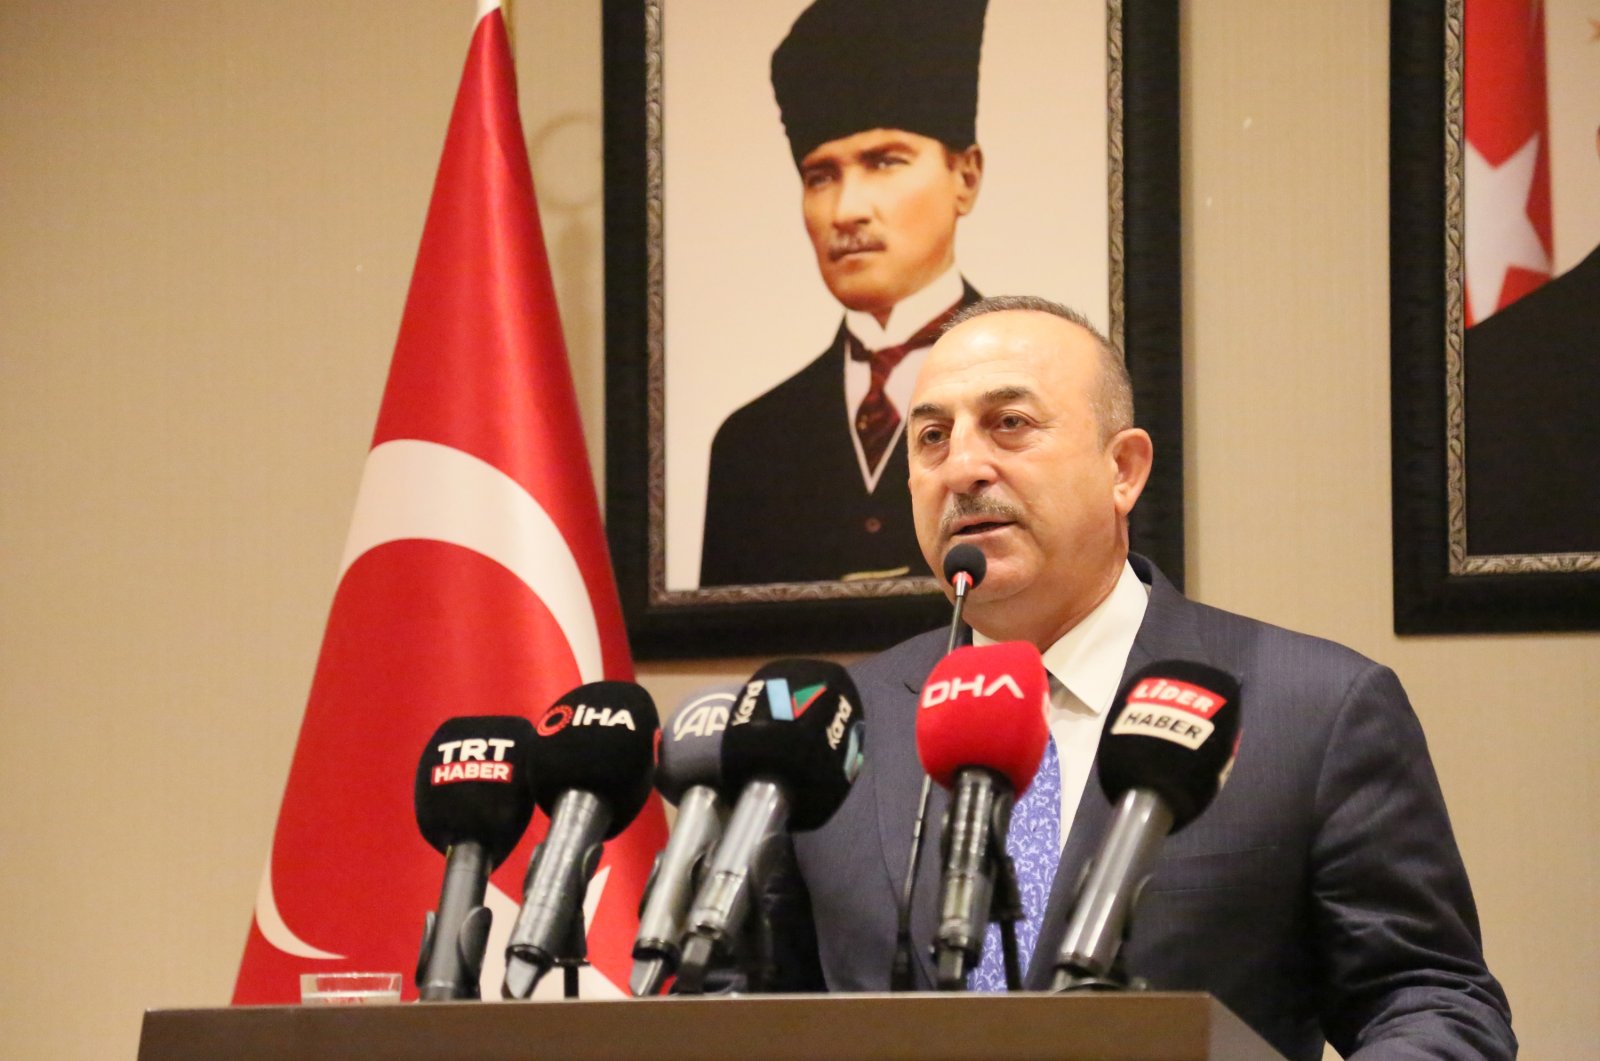 Foreign Minister Mevlüt Çavuşoğlu speaks at an event in Antalya, Türkiye, in this undated photo. (DHA Photo)